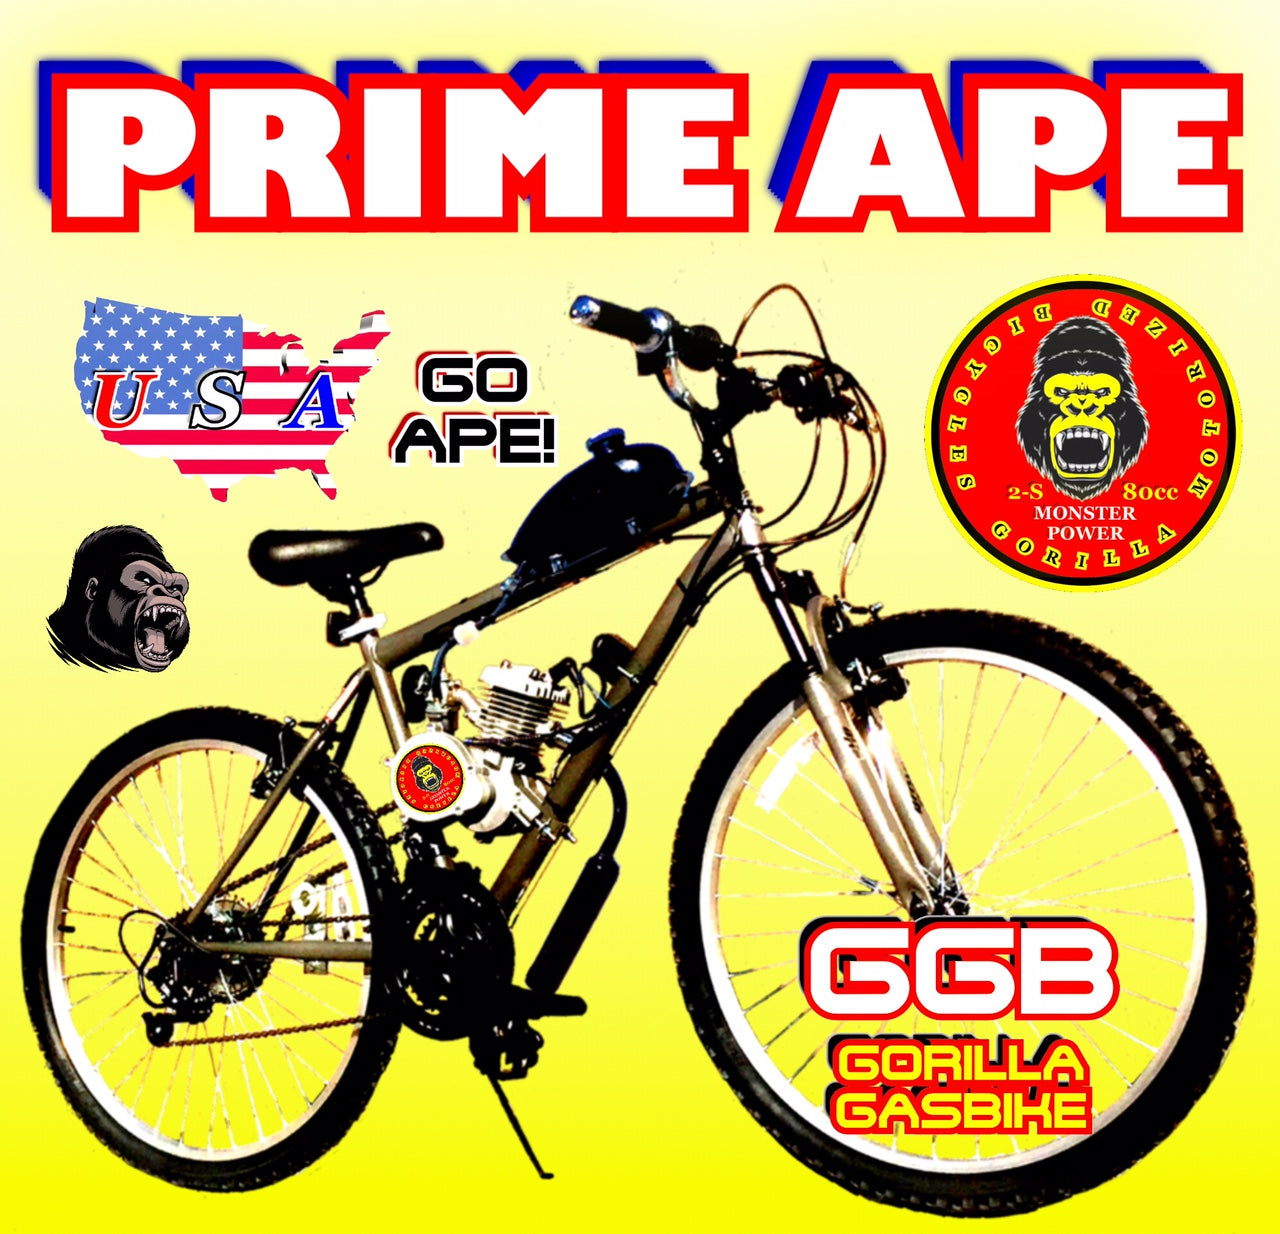 gas bike motor kit